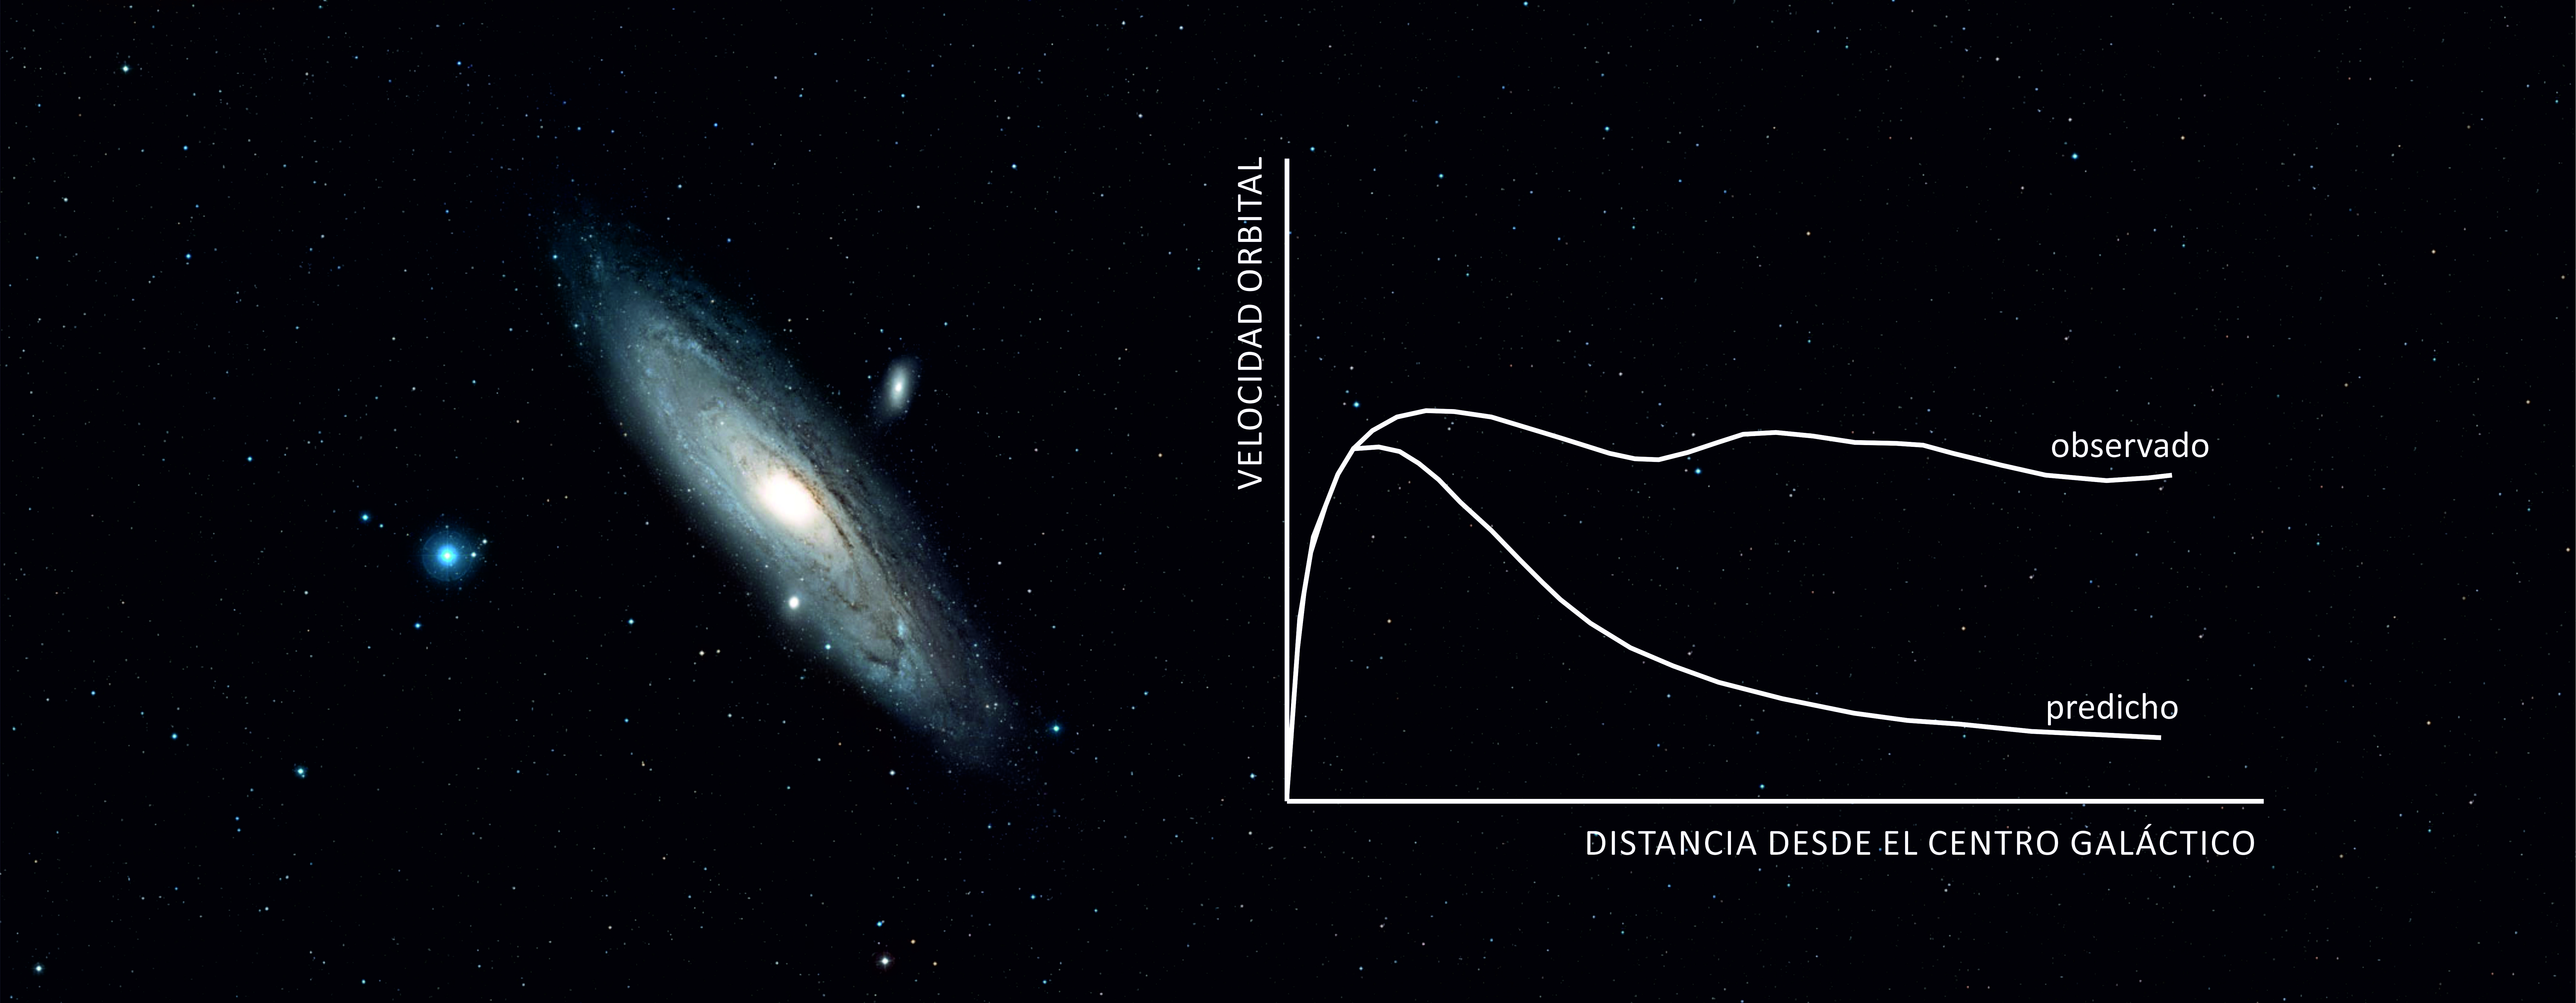 Como la masa de las galaxias se halla concentrada en el núcleo brillante, la velocidad de rotación de las estrellas debía disminuir con la distancia (como ocurre con los planetas del Sistema Solar); las investigaciones indicaron, sin embargo, una velocidad independiente del alejamiento del centro, traducido en curvas de rotación planas.